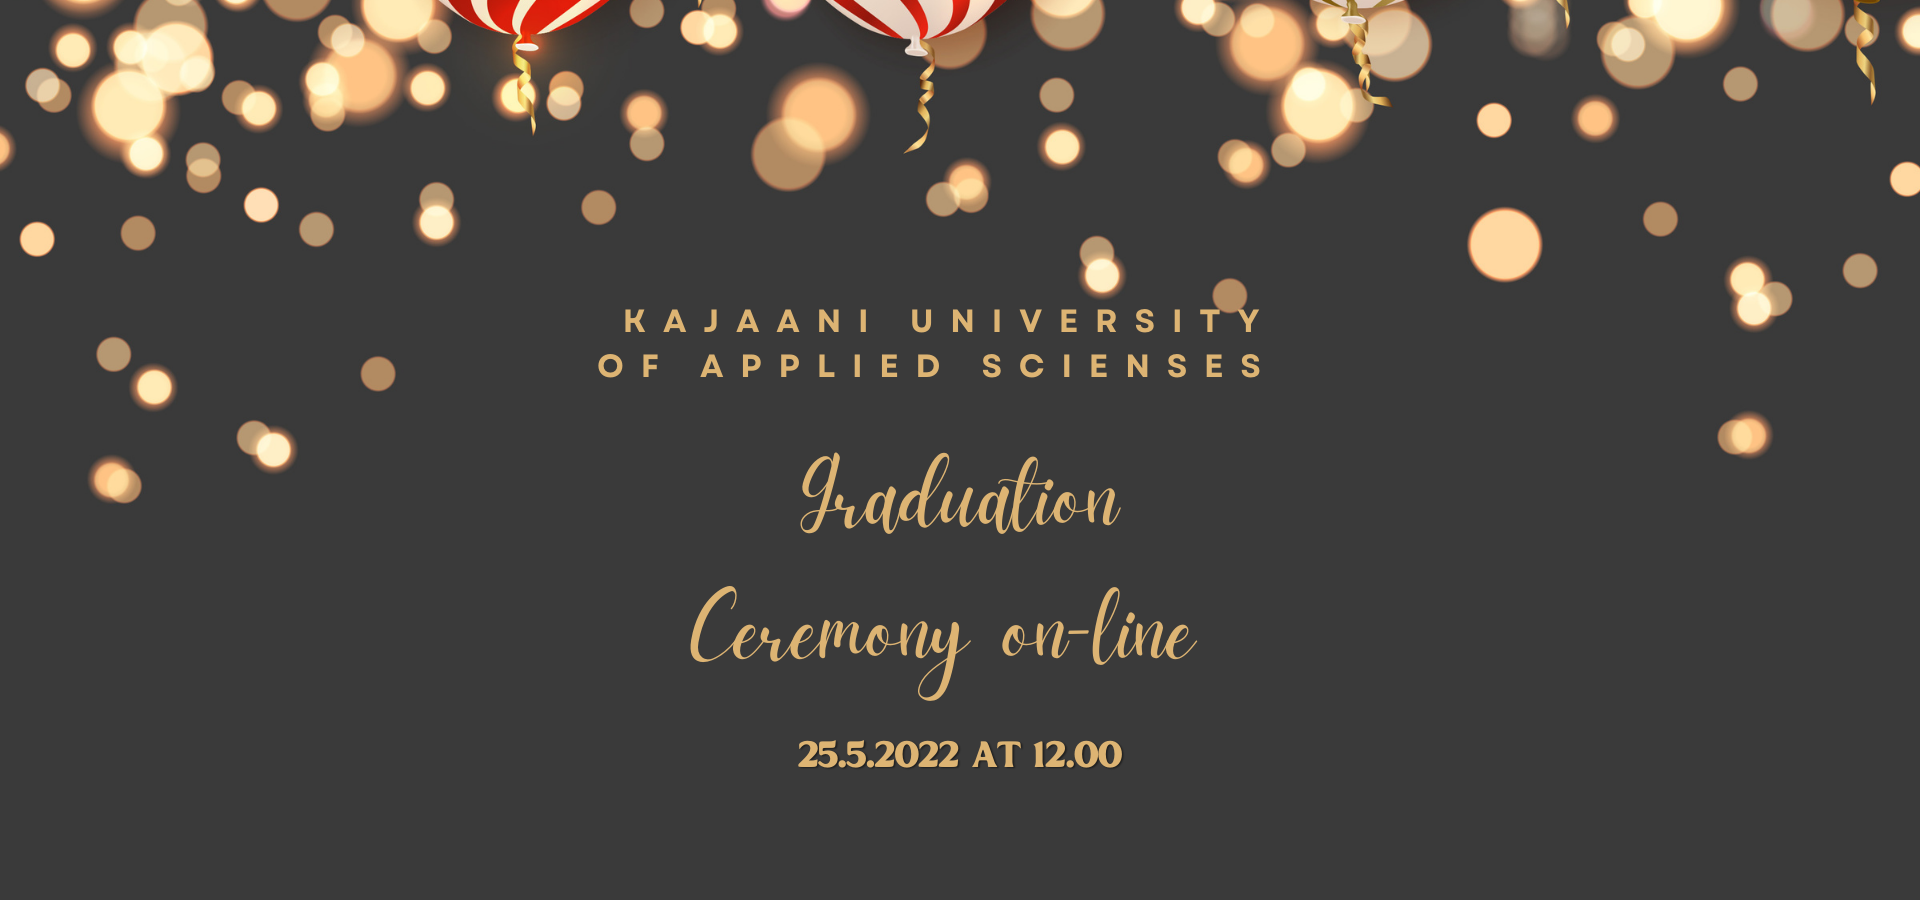 Balloons on dark backround. Text: Kajaani Unisversity on applied Sciences Graduation Ceremony on-line 25.5.2022 at 12